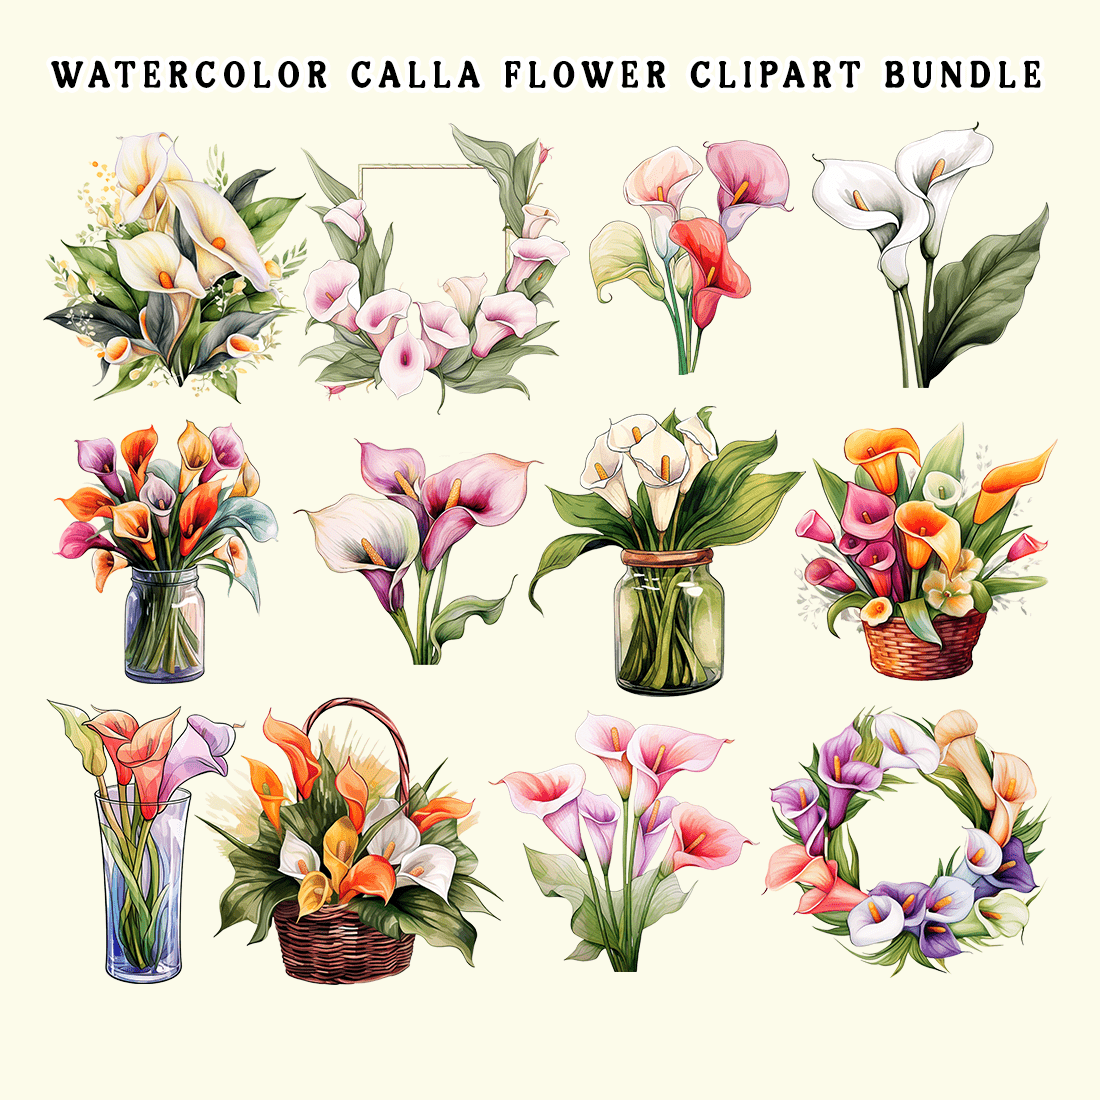 Watercolor Calla Flower Clipart Bundle preview image.